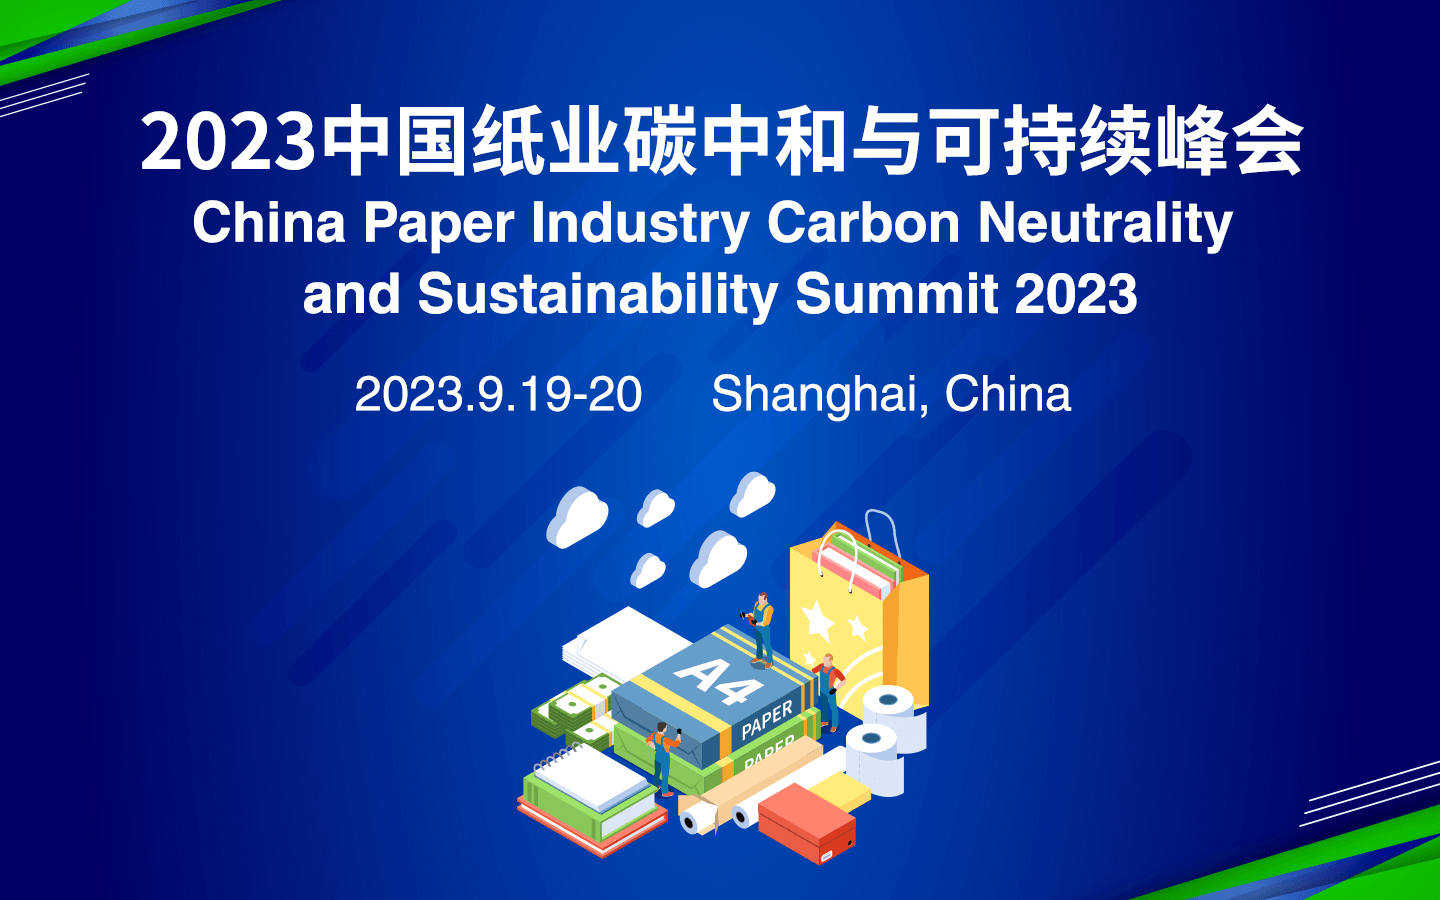 2023中国纸业碳中和与可持续峰会